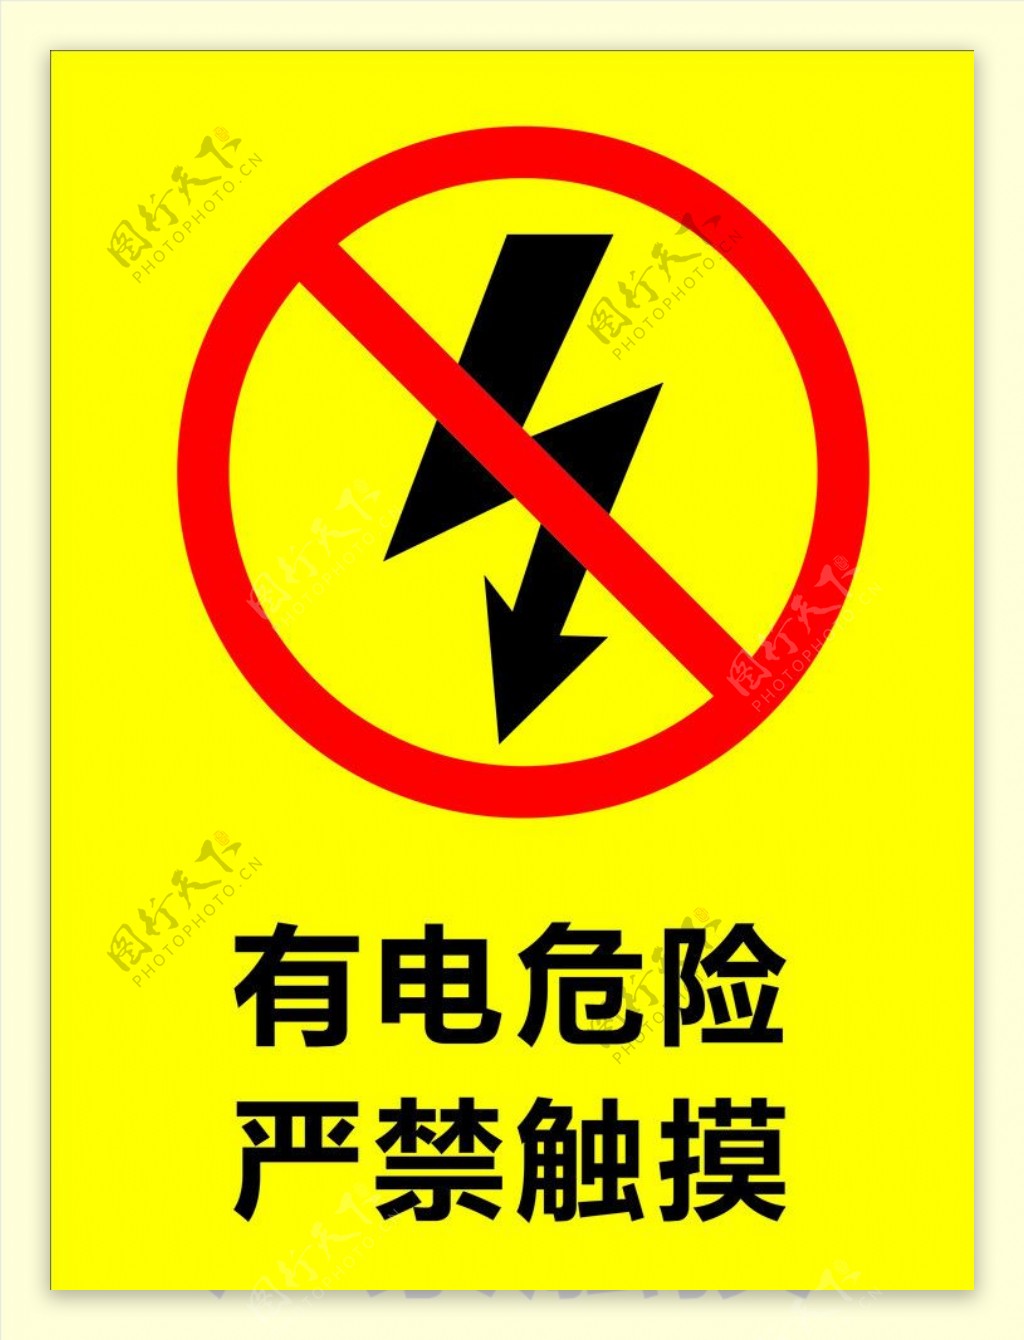 常见触电危险小标志图片